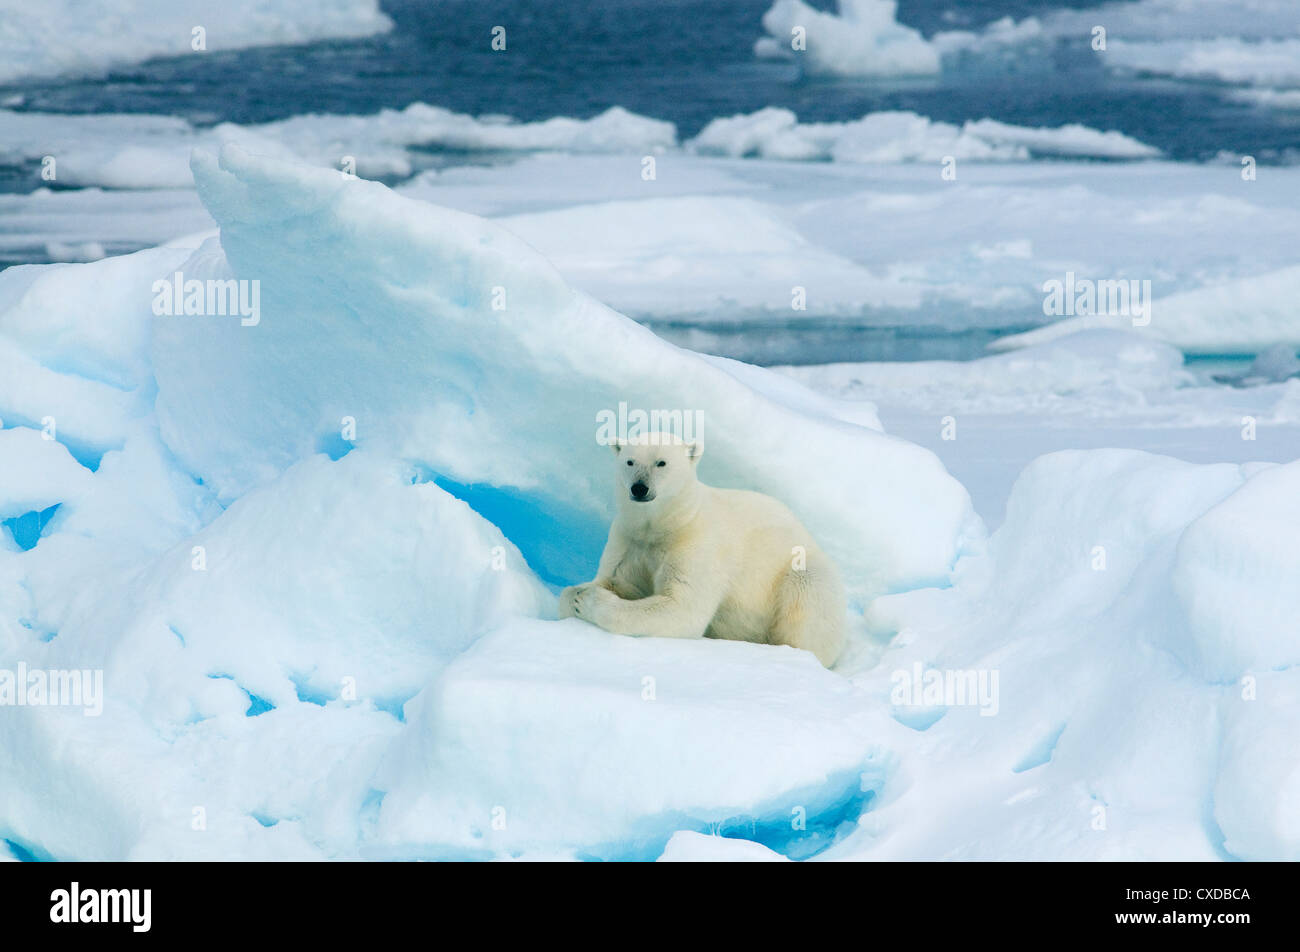 L'ours polaire (Ursus maritimus) dans la banquise, Août, Svalbard, Norvège Banque D'Images